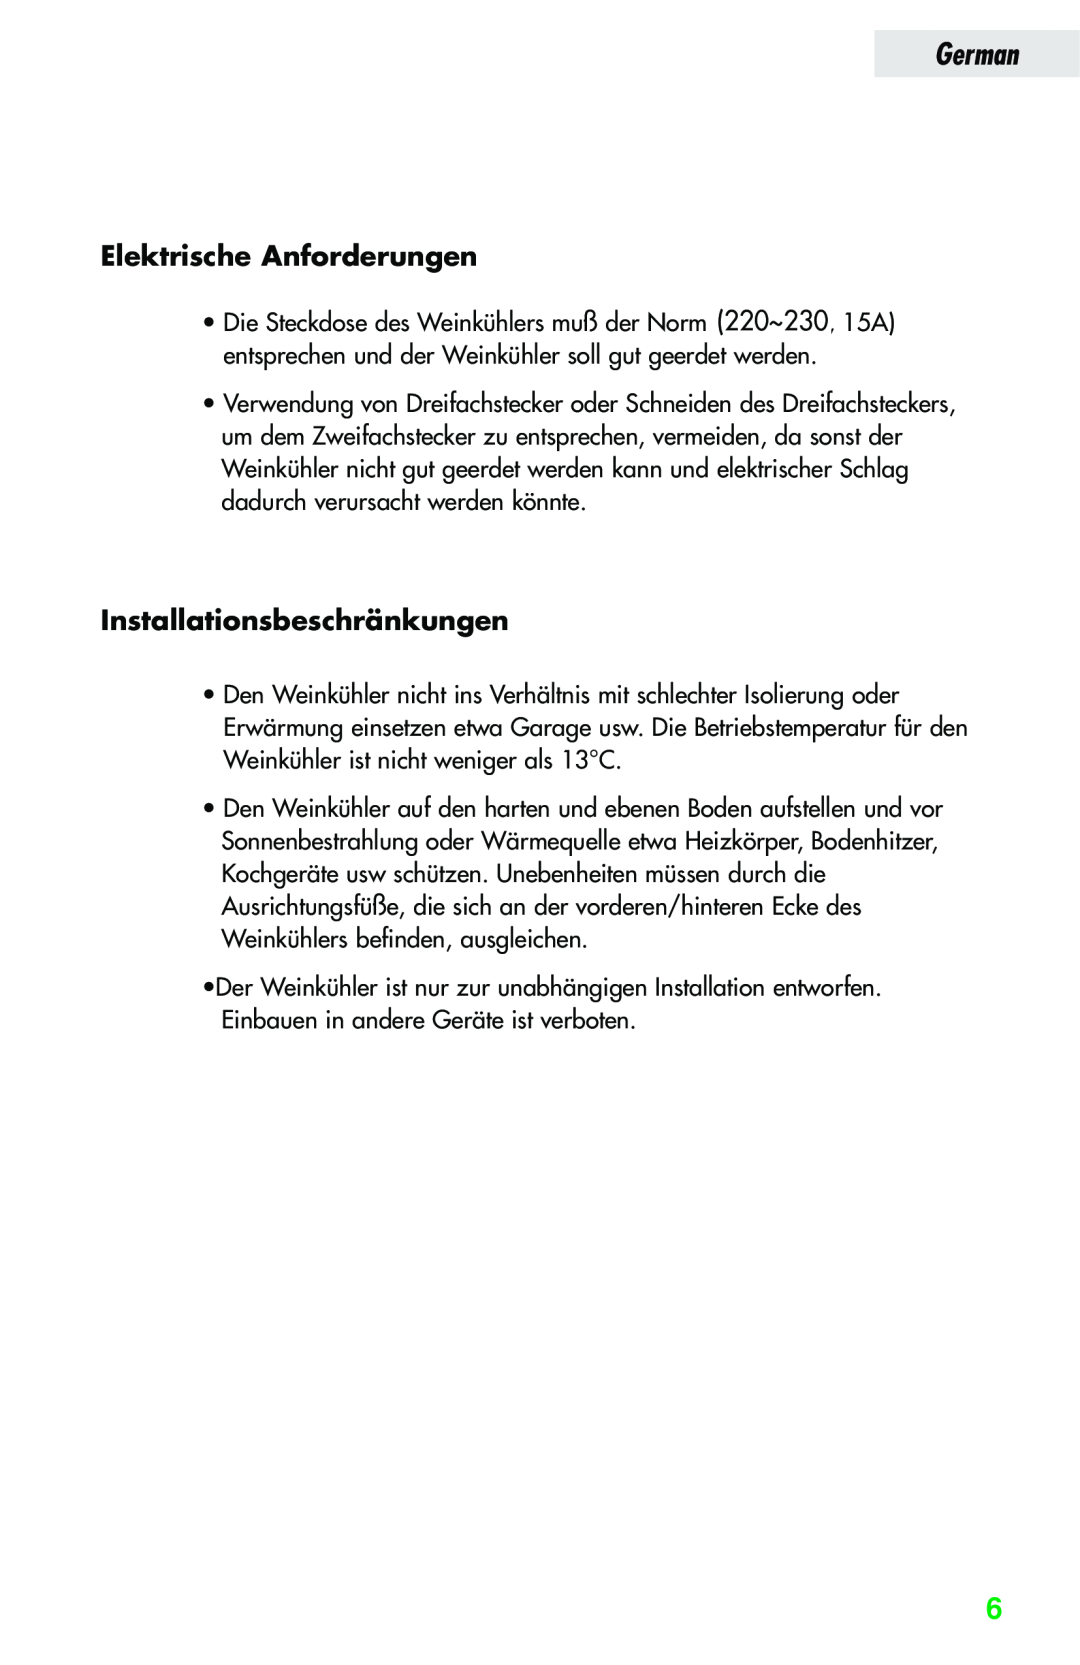 Haier JC-82GB manual Elektrische Anforderungen, Installationsbeschränkungen, German 